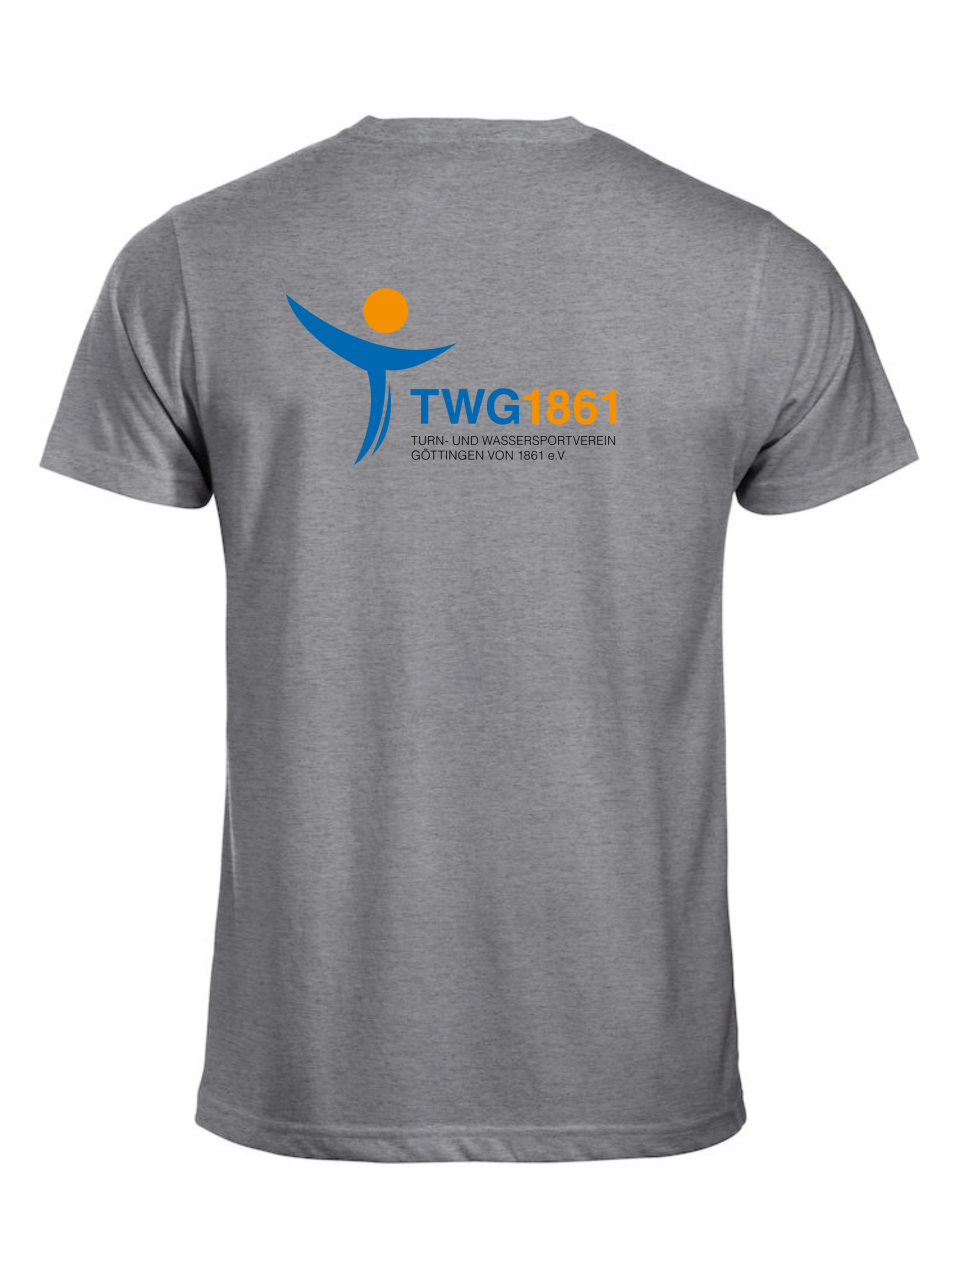 Classic T-Shirt mit TWG-Logo auf den Rücken